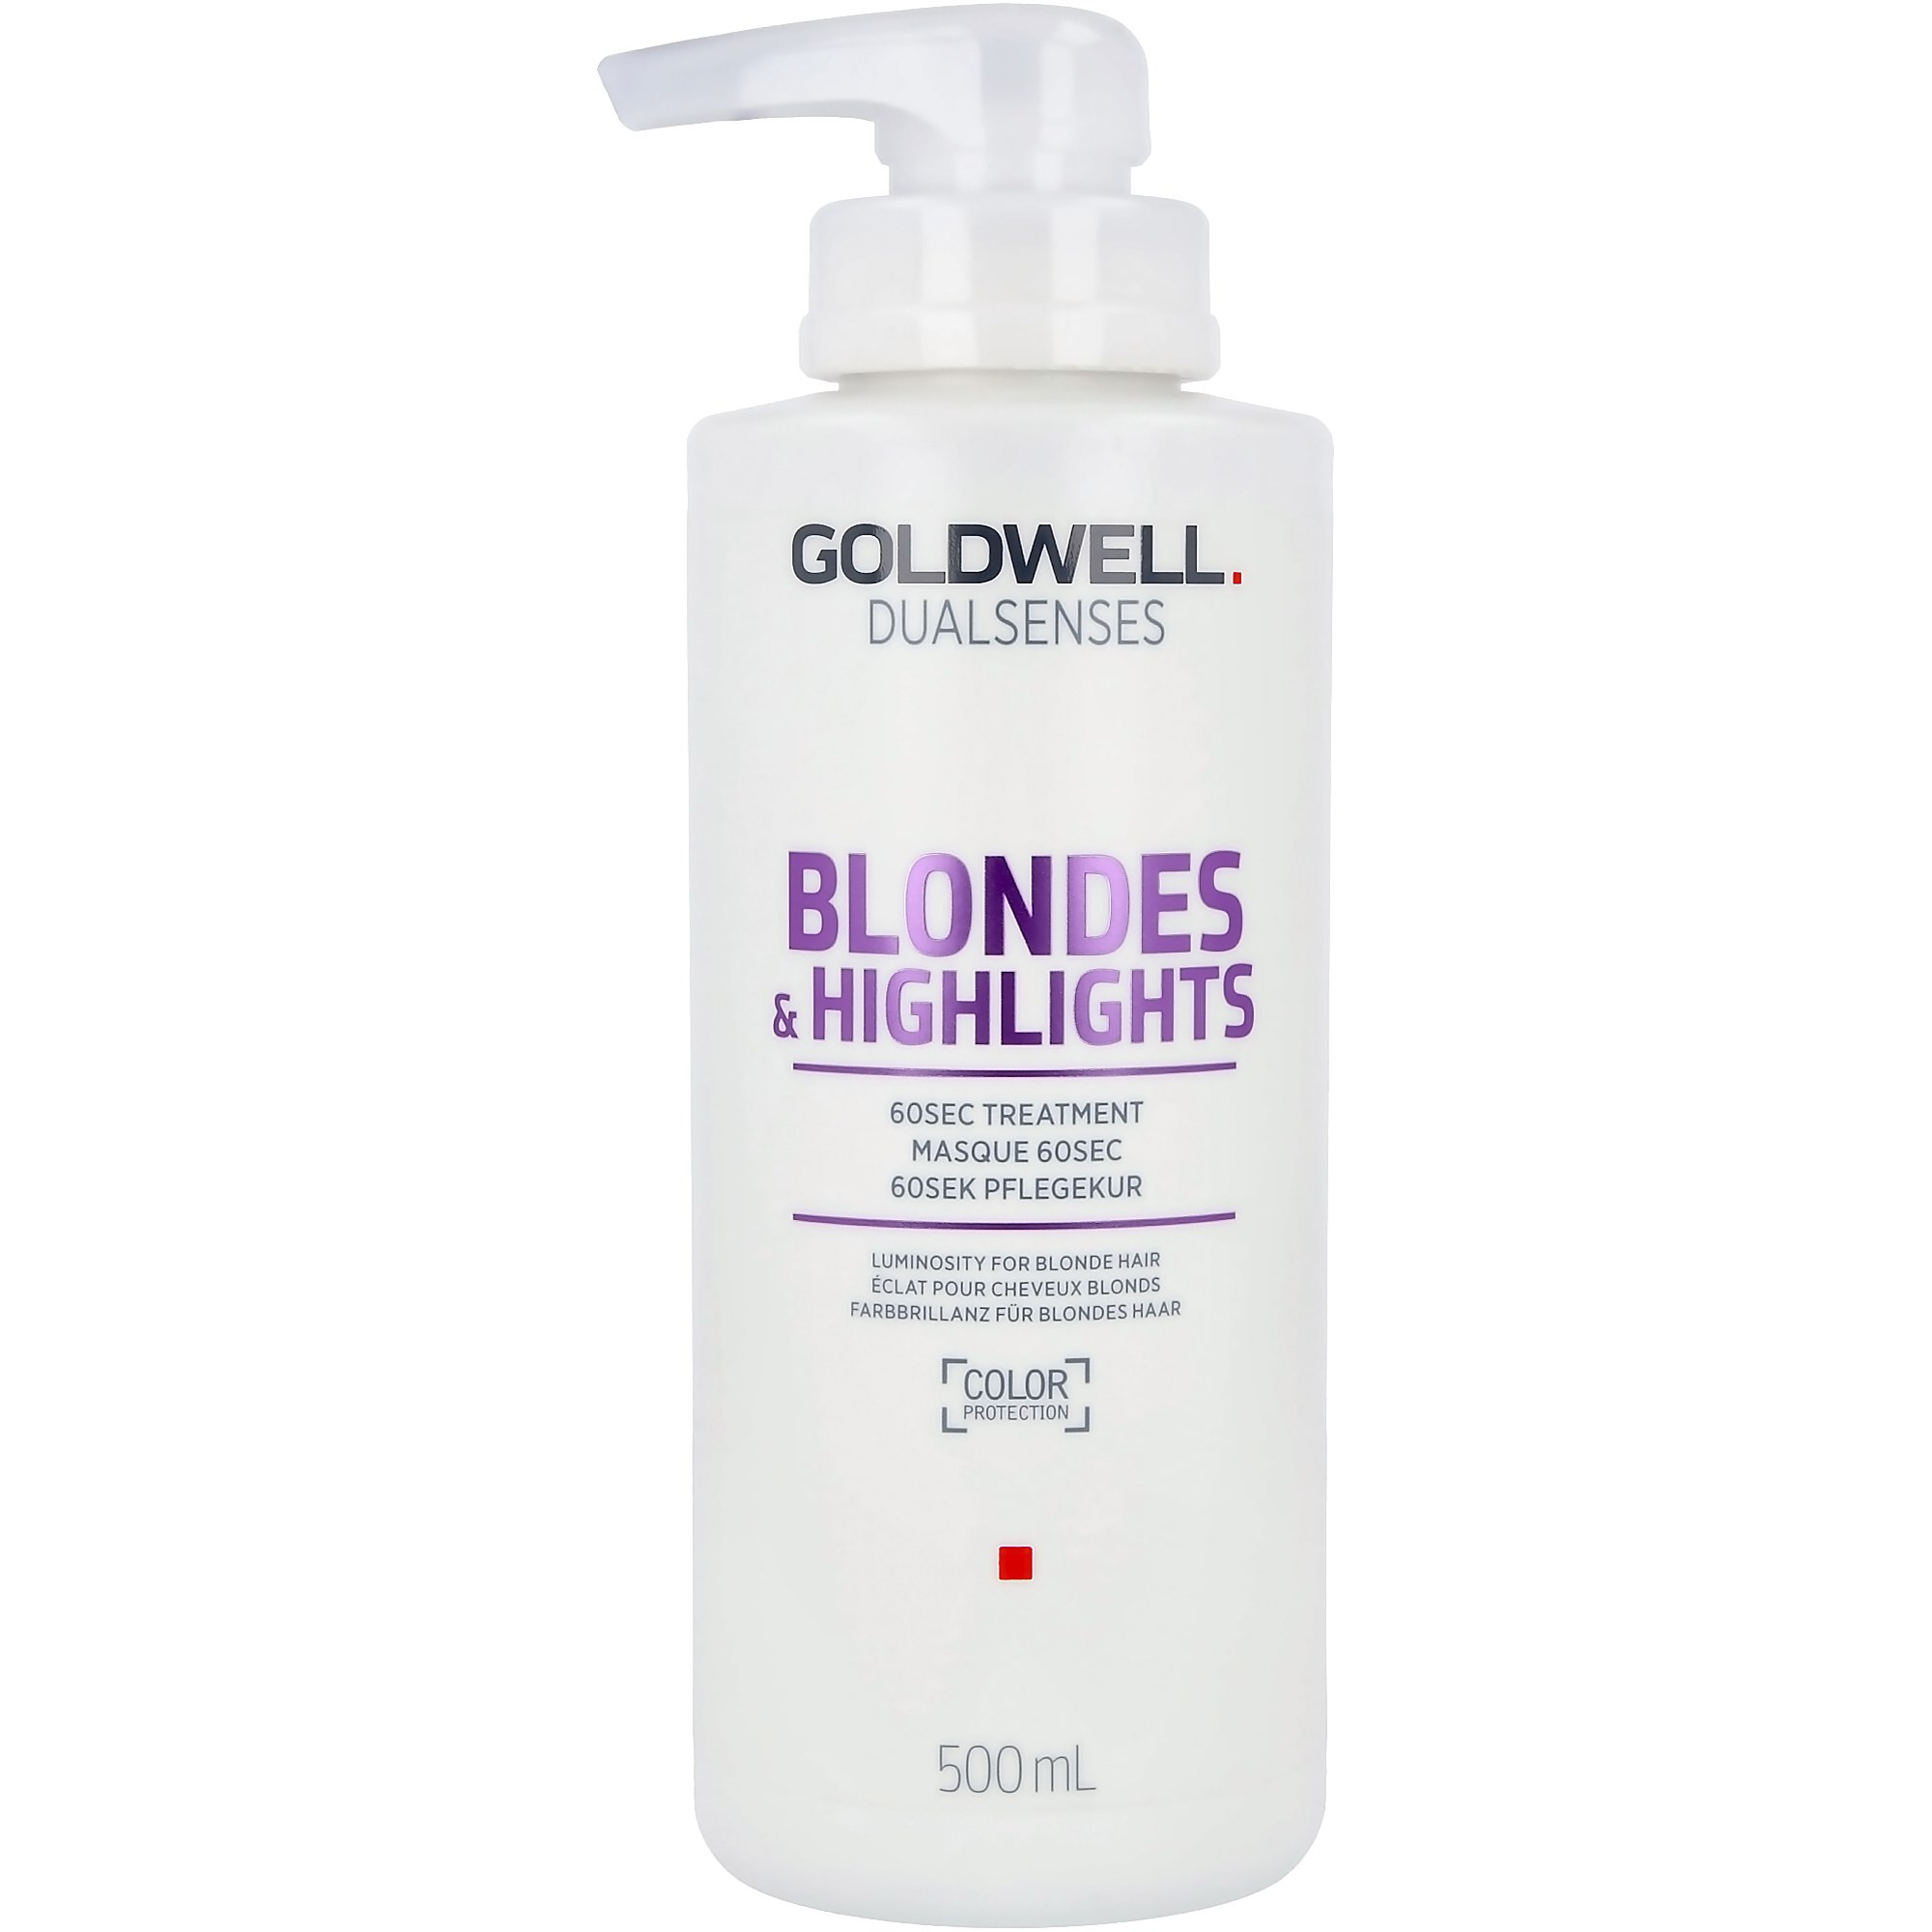 Bilde av Goldwell Dualsenses Blonde & Highlights 60 Sec Treatment 500 Ml